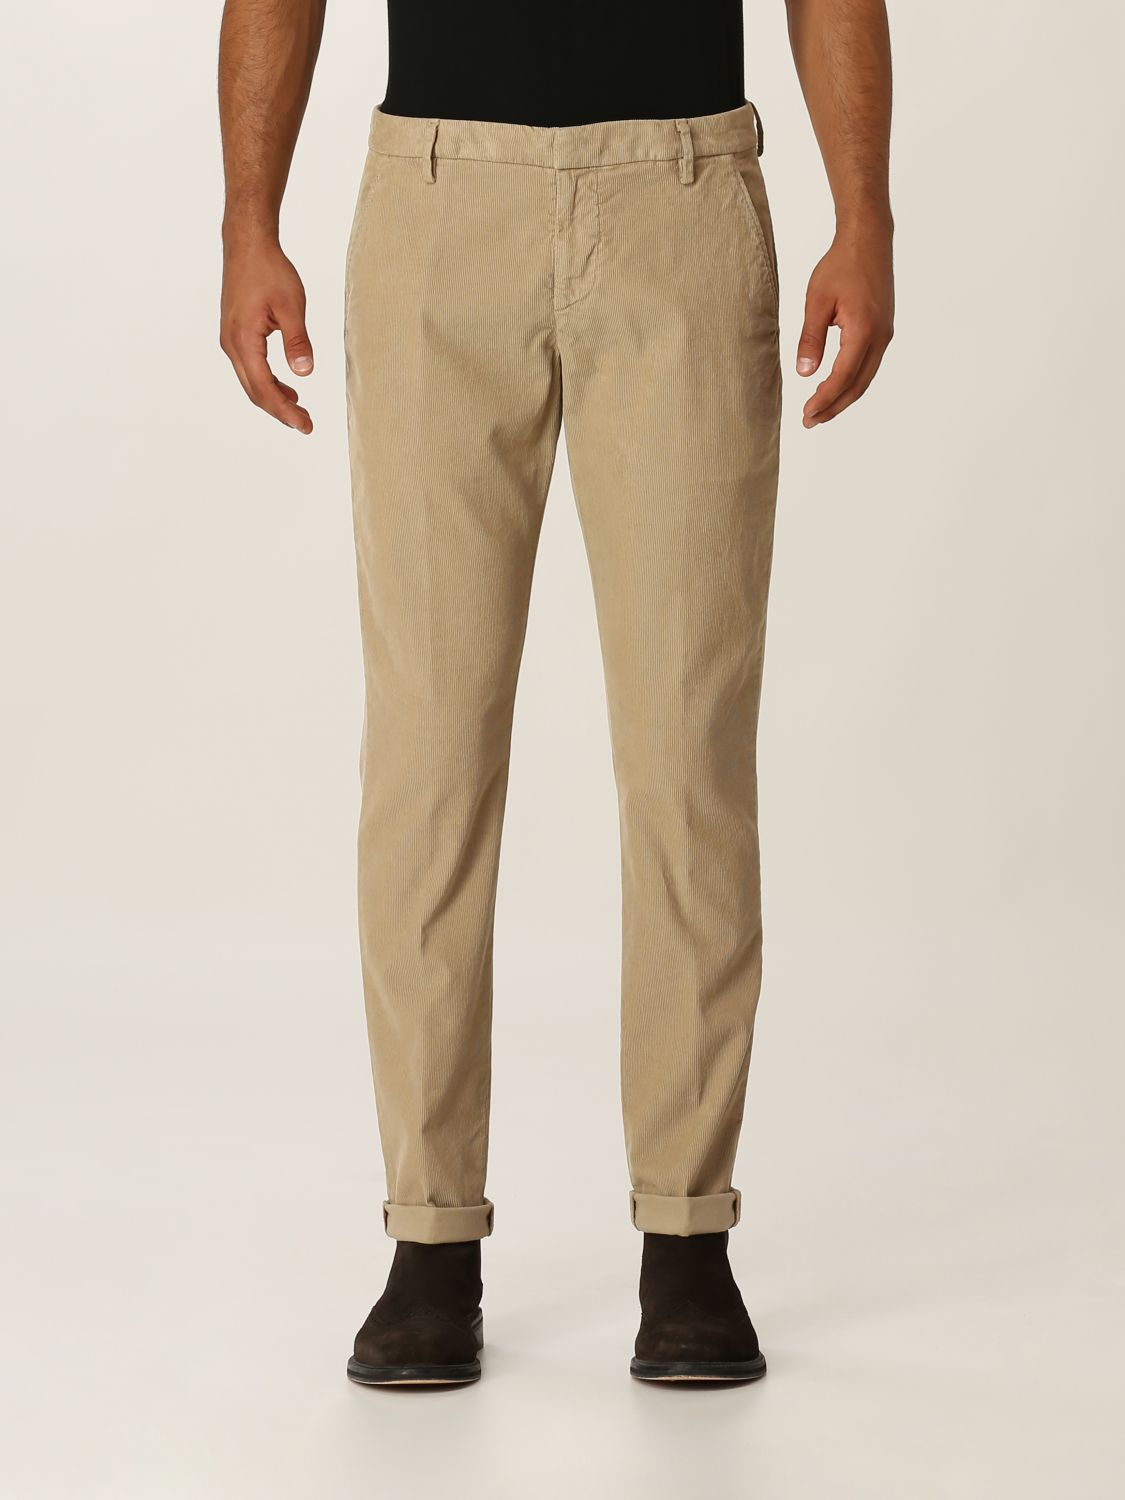 Pantalone in cotone stretch Giglio.com Abbigliamento Pantaloni e jeans Pantaloni Pantaloni stretch 